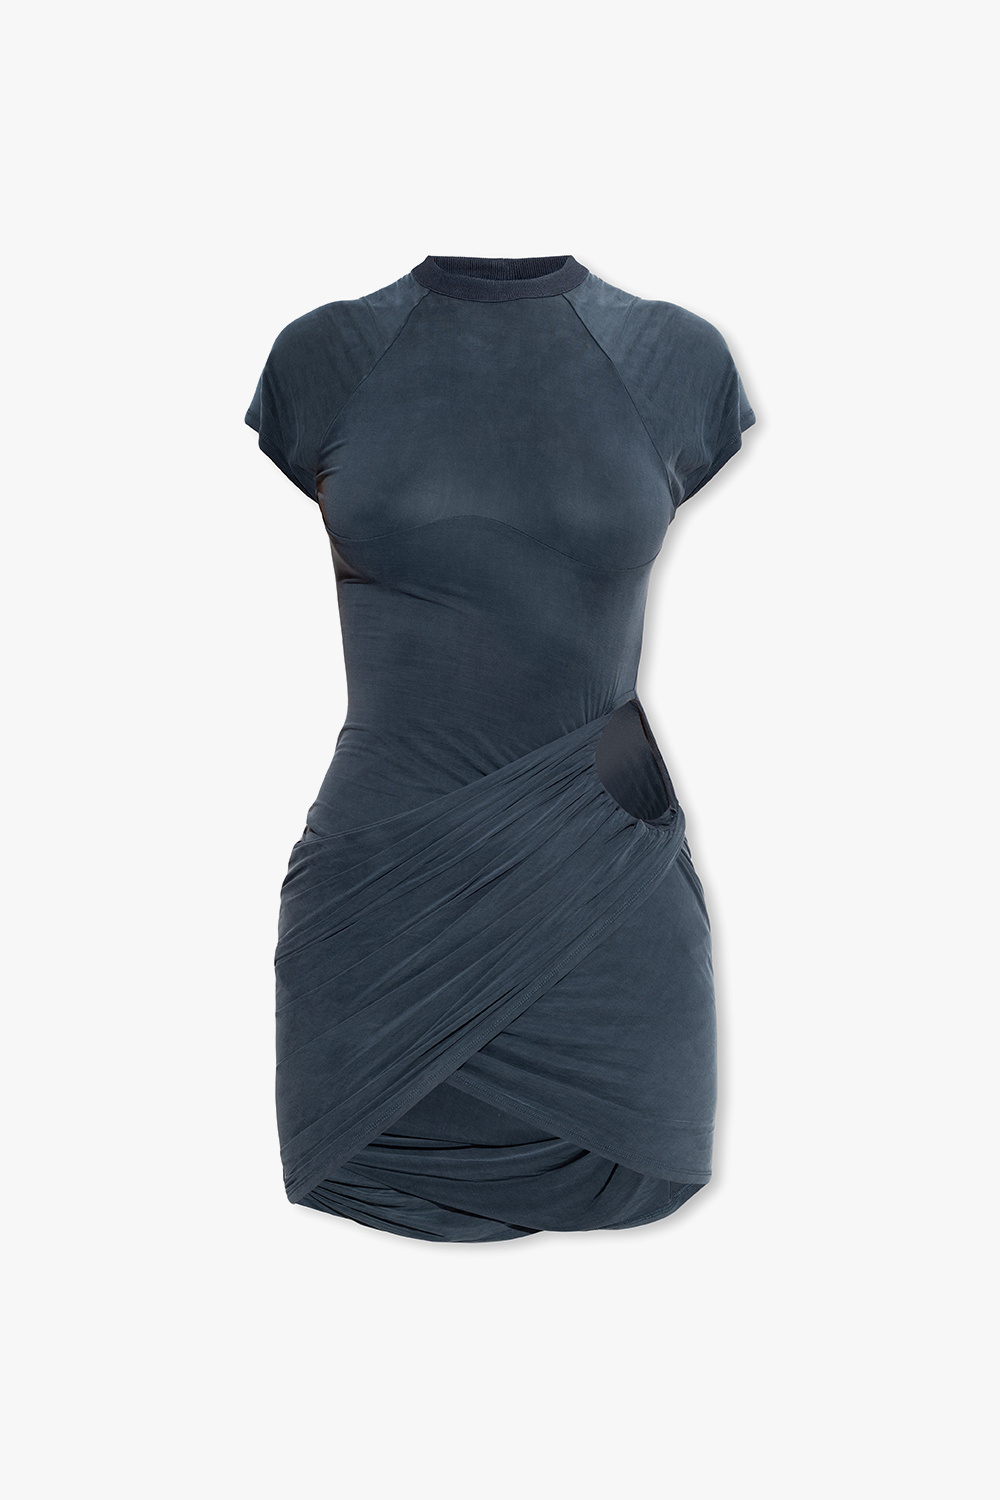 BLACK Short sleeve fishnet panel dress, Womens Lingerie